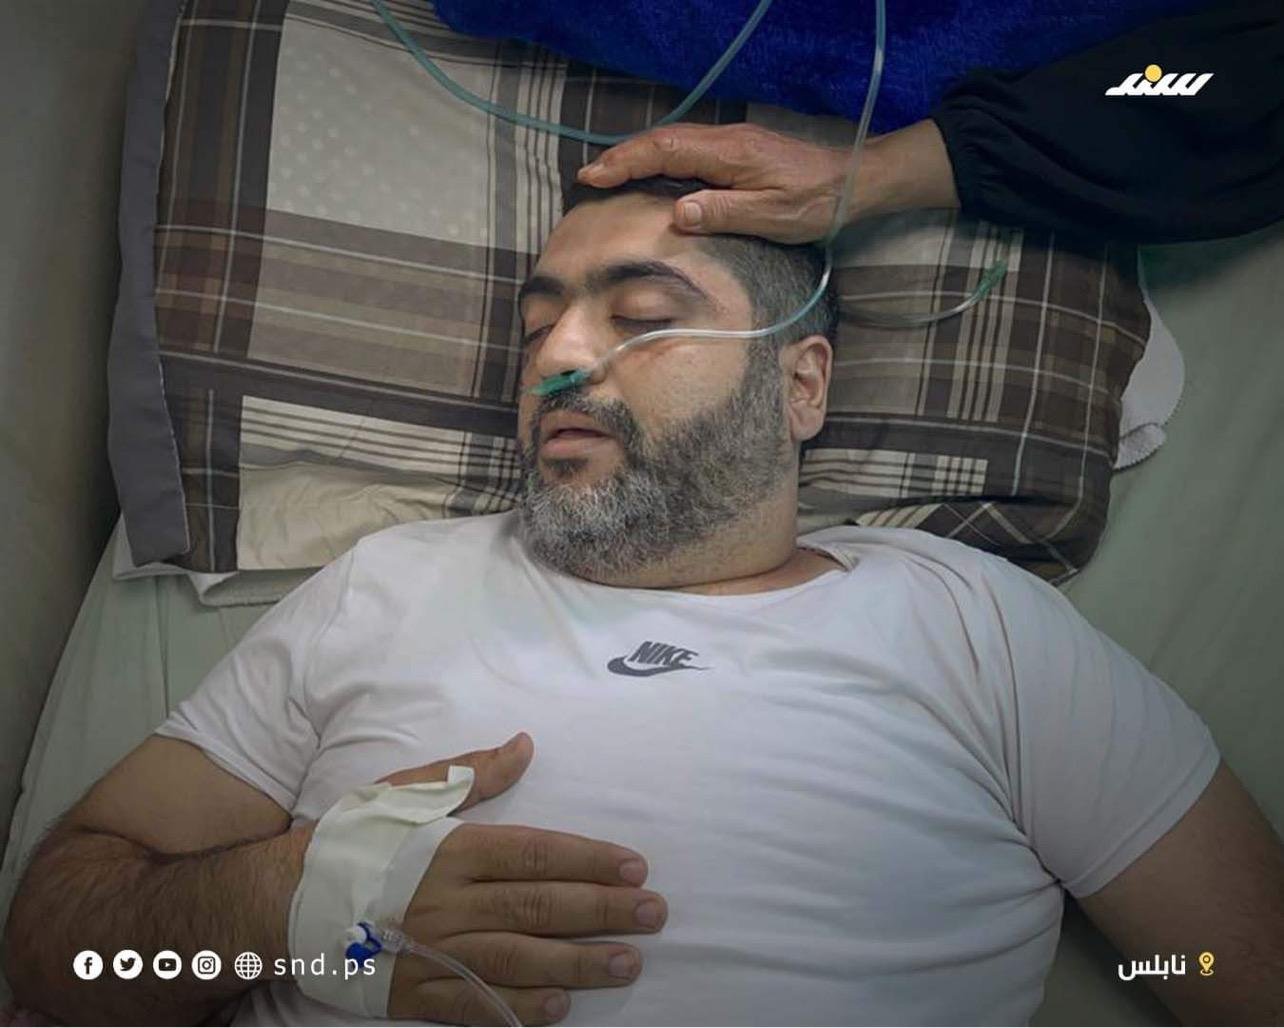 الاعلان عن وفاة الأسير المحرر زيد الكيلاني واتهامات لاسرائيل بإهمال علاجه-2